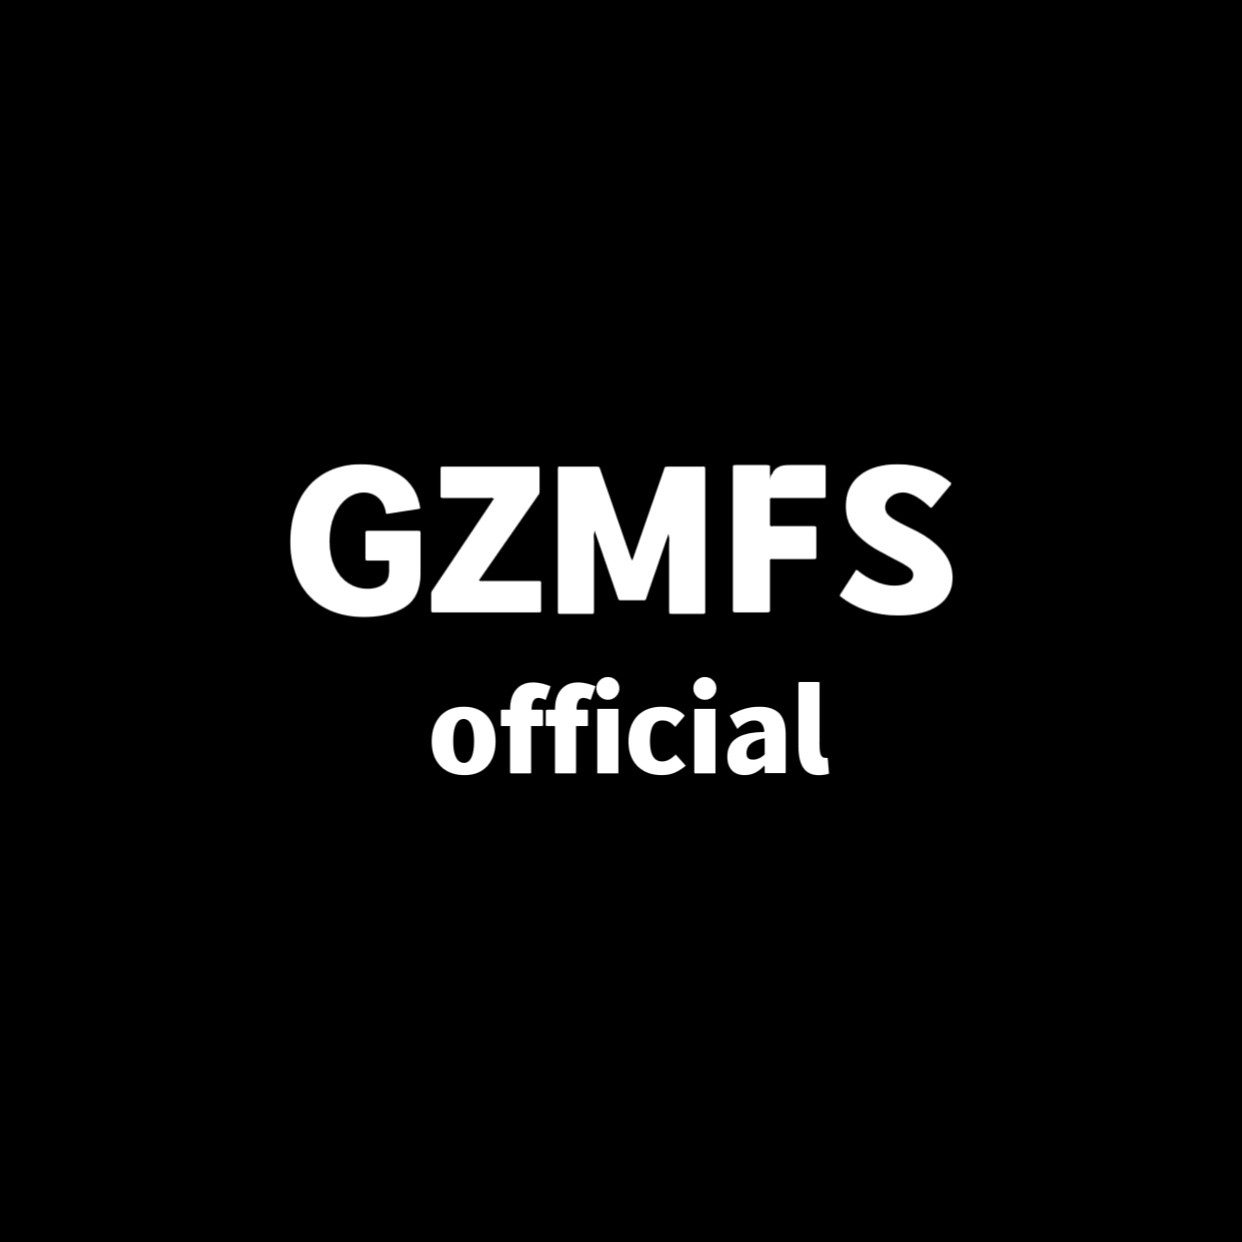 GZMFS OFFICIAL